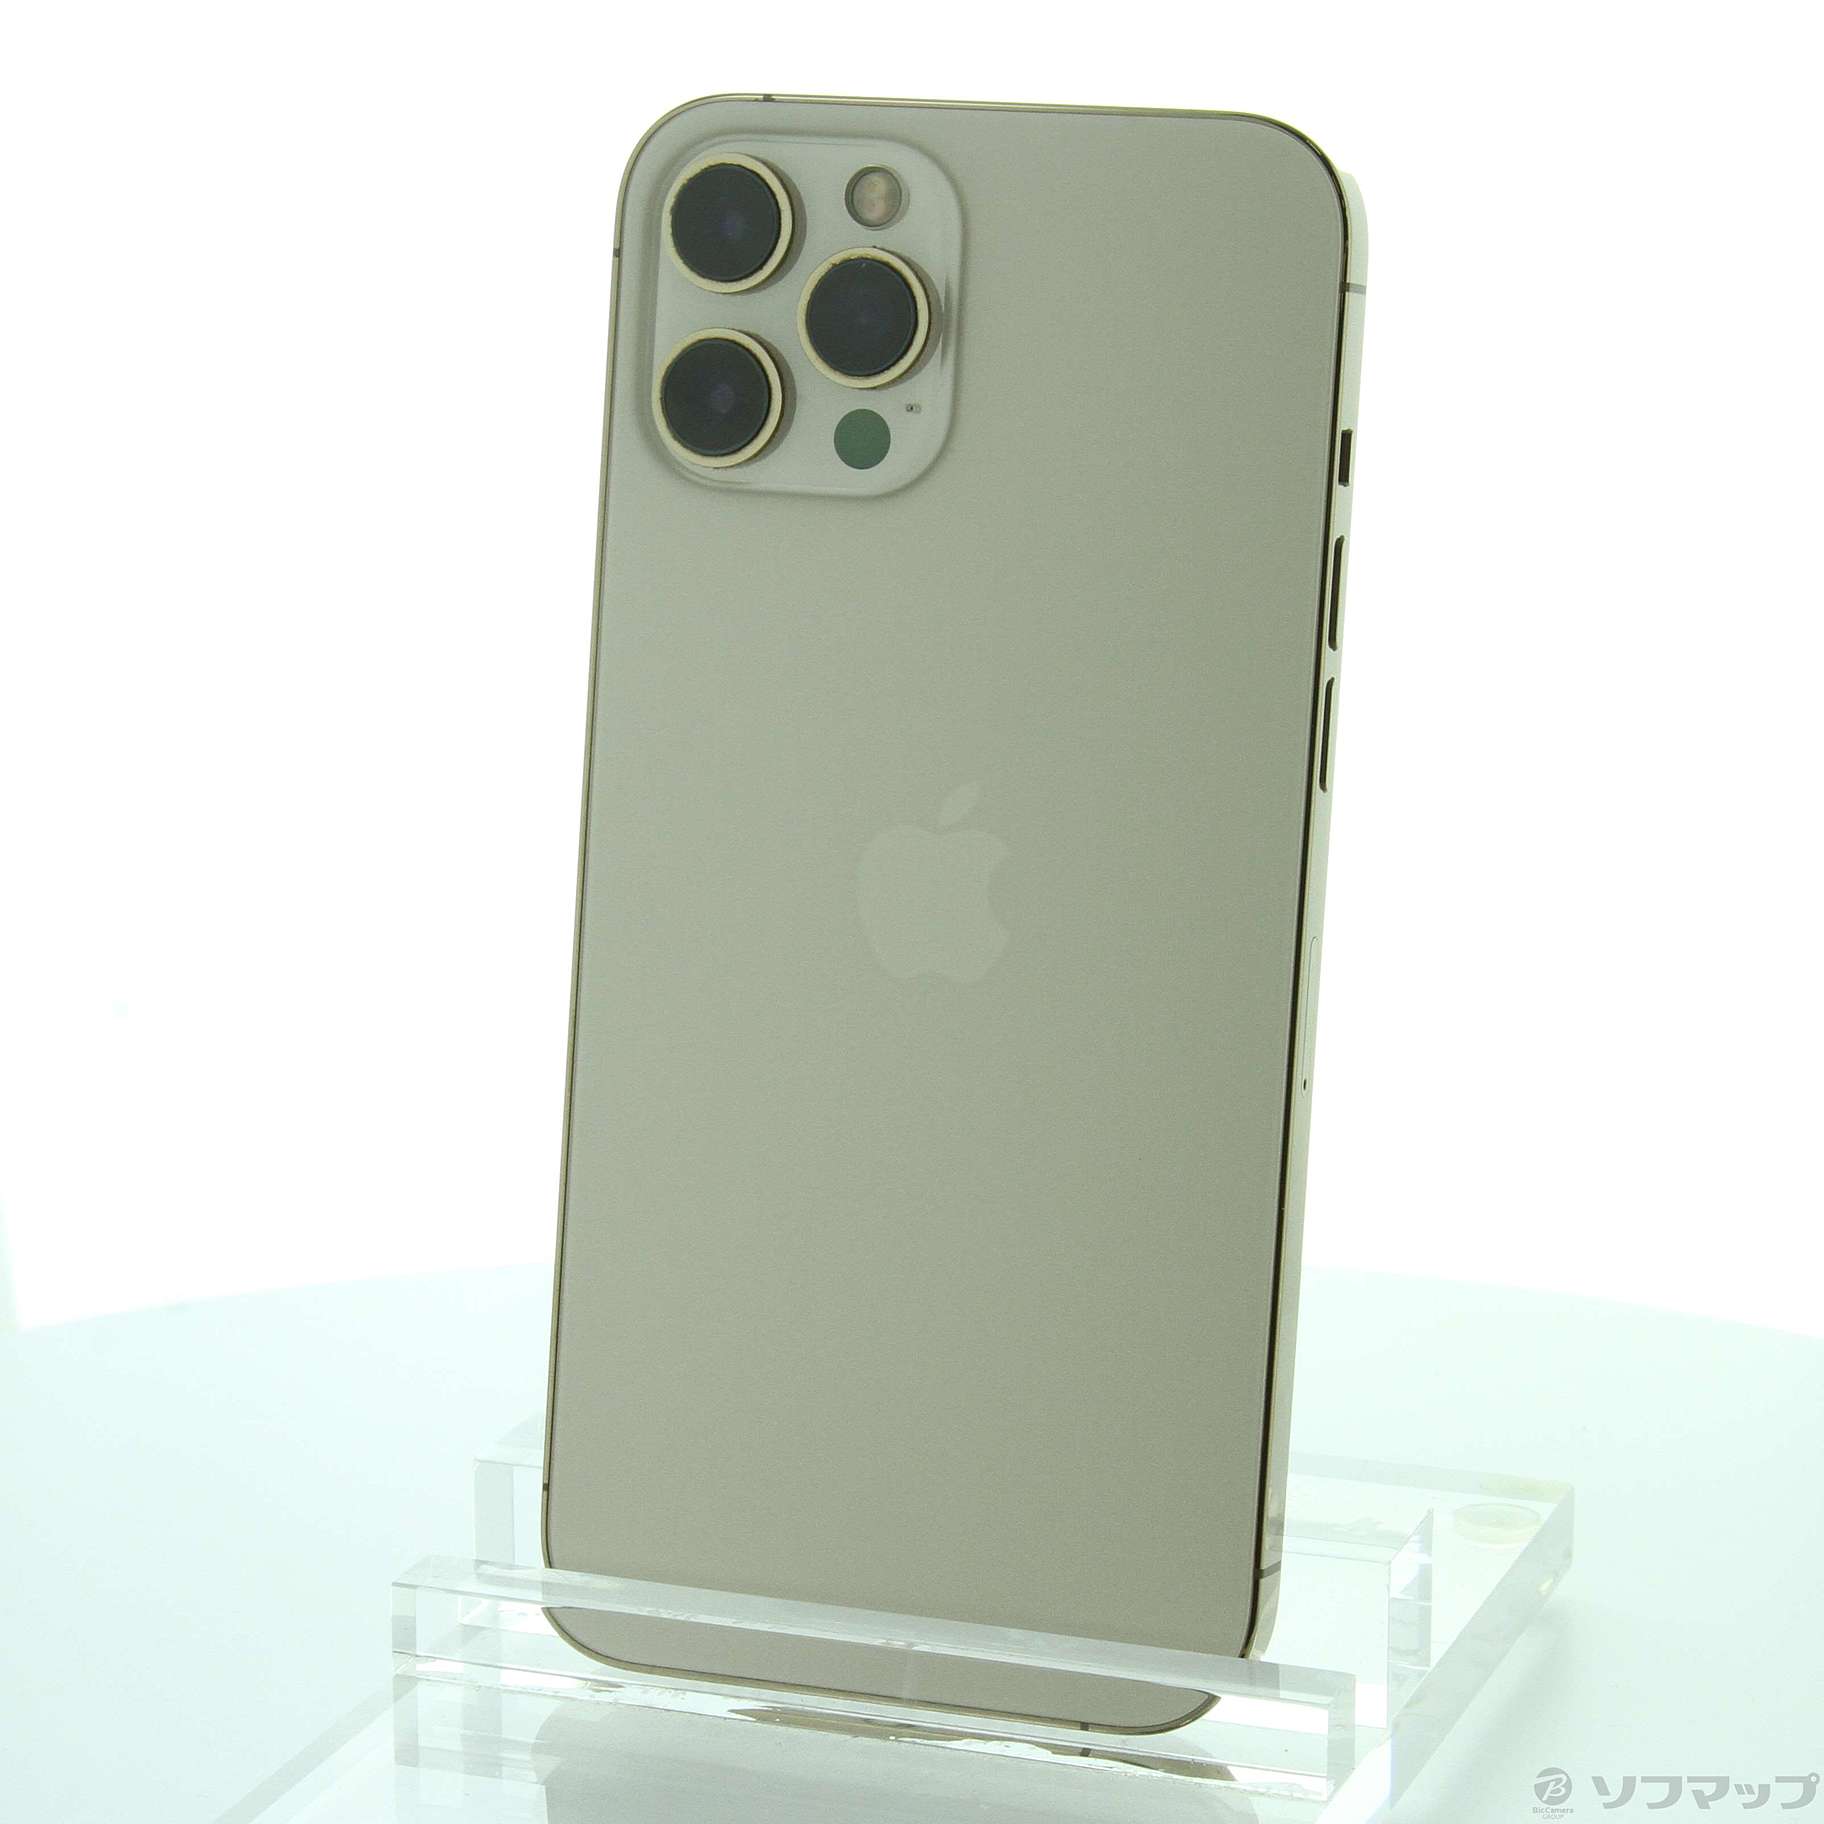 アップル iPhone12 Pro Max 256GB ゴールド